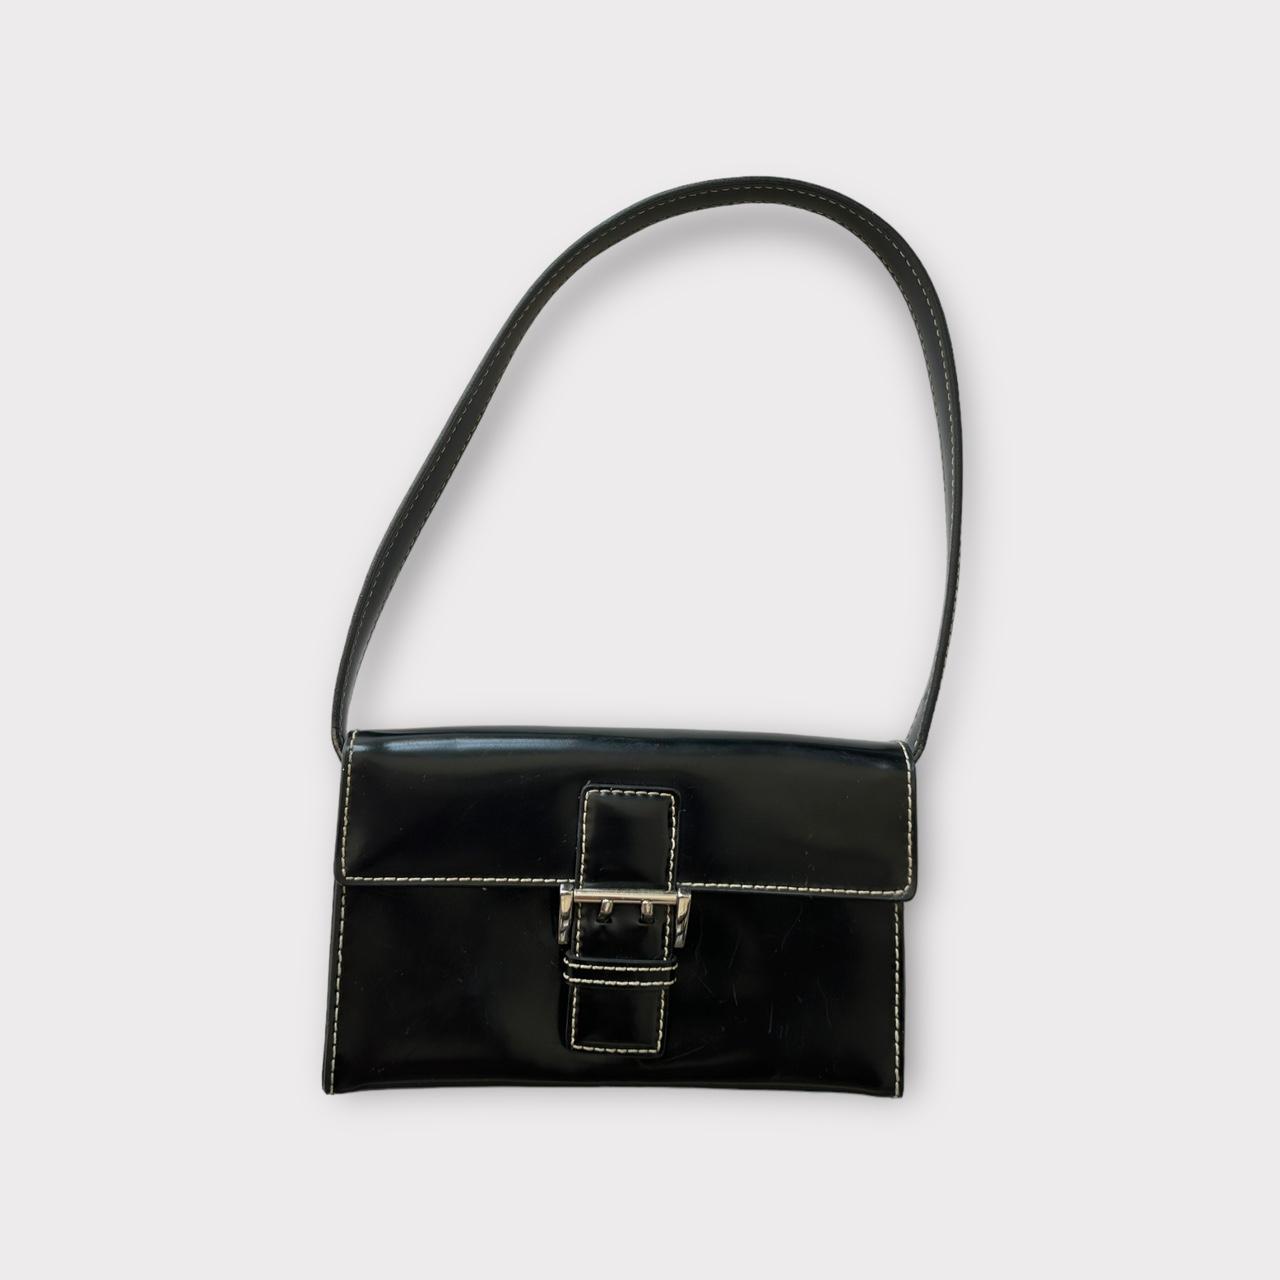 Prada - Black & Cream Patent Leather Shoulder Bag